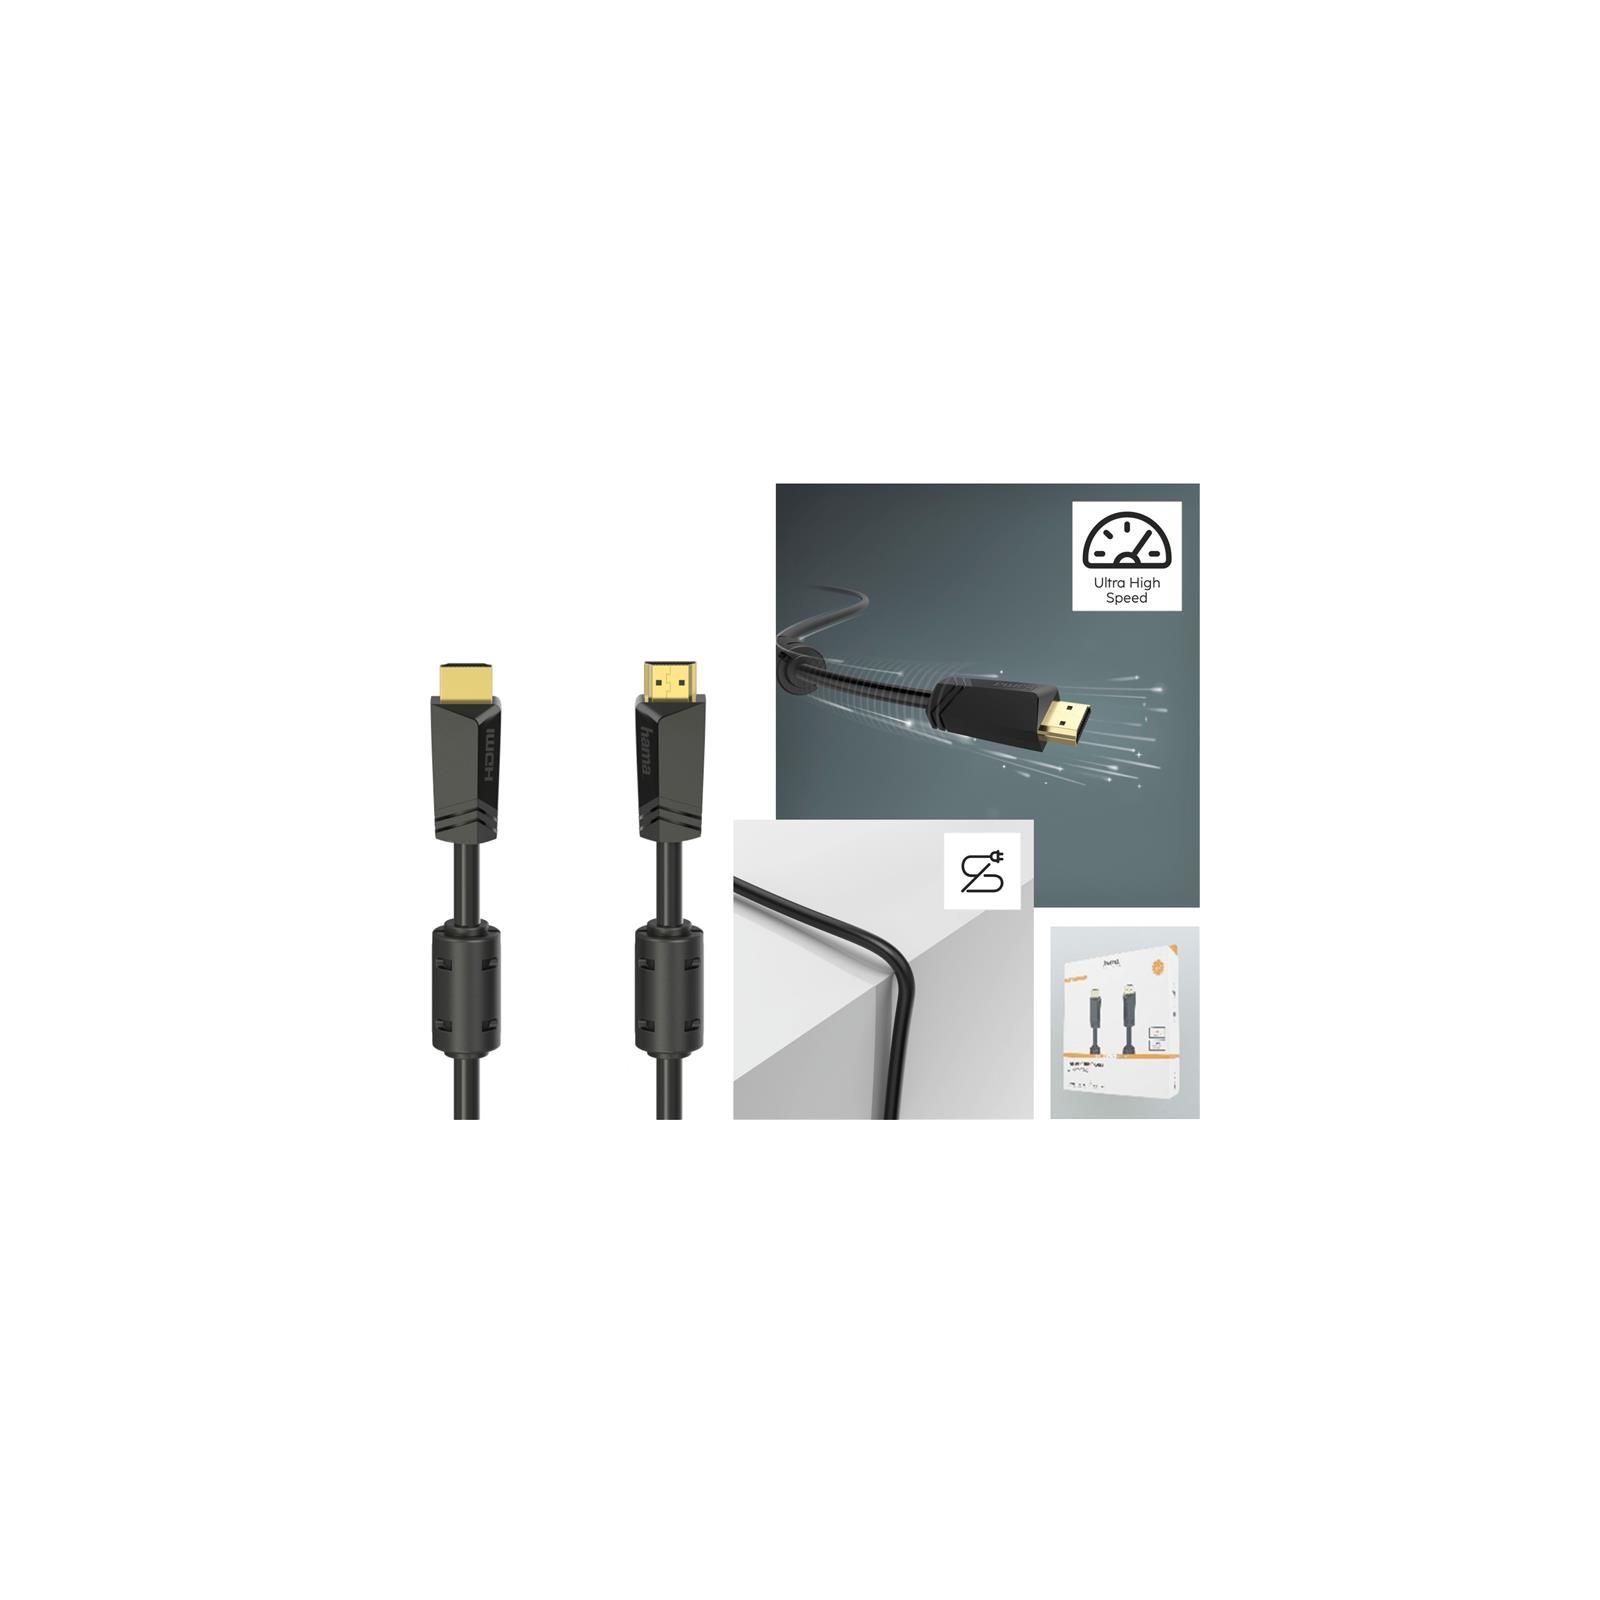 Кабель мультимедийный HDMI to HDMI 15.0m 4K Ethernet Gold Black Hama (00205010) изображение 4